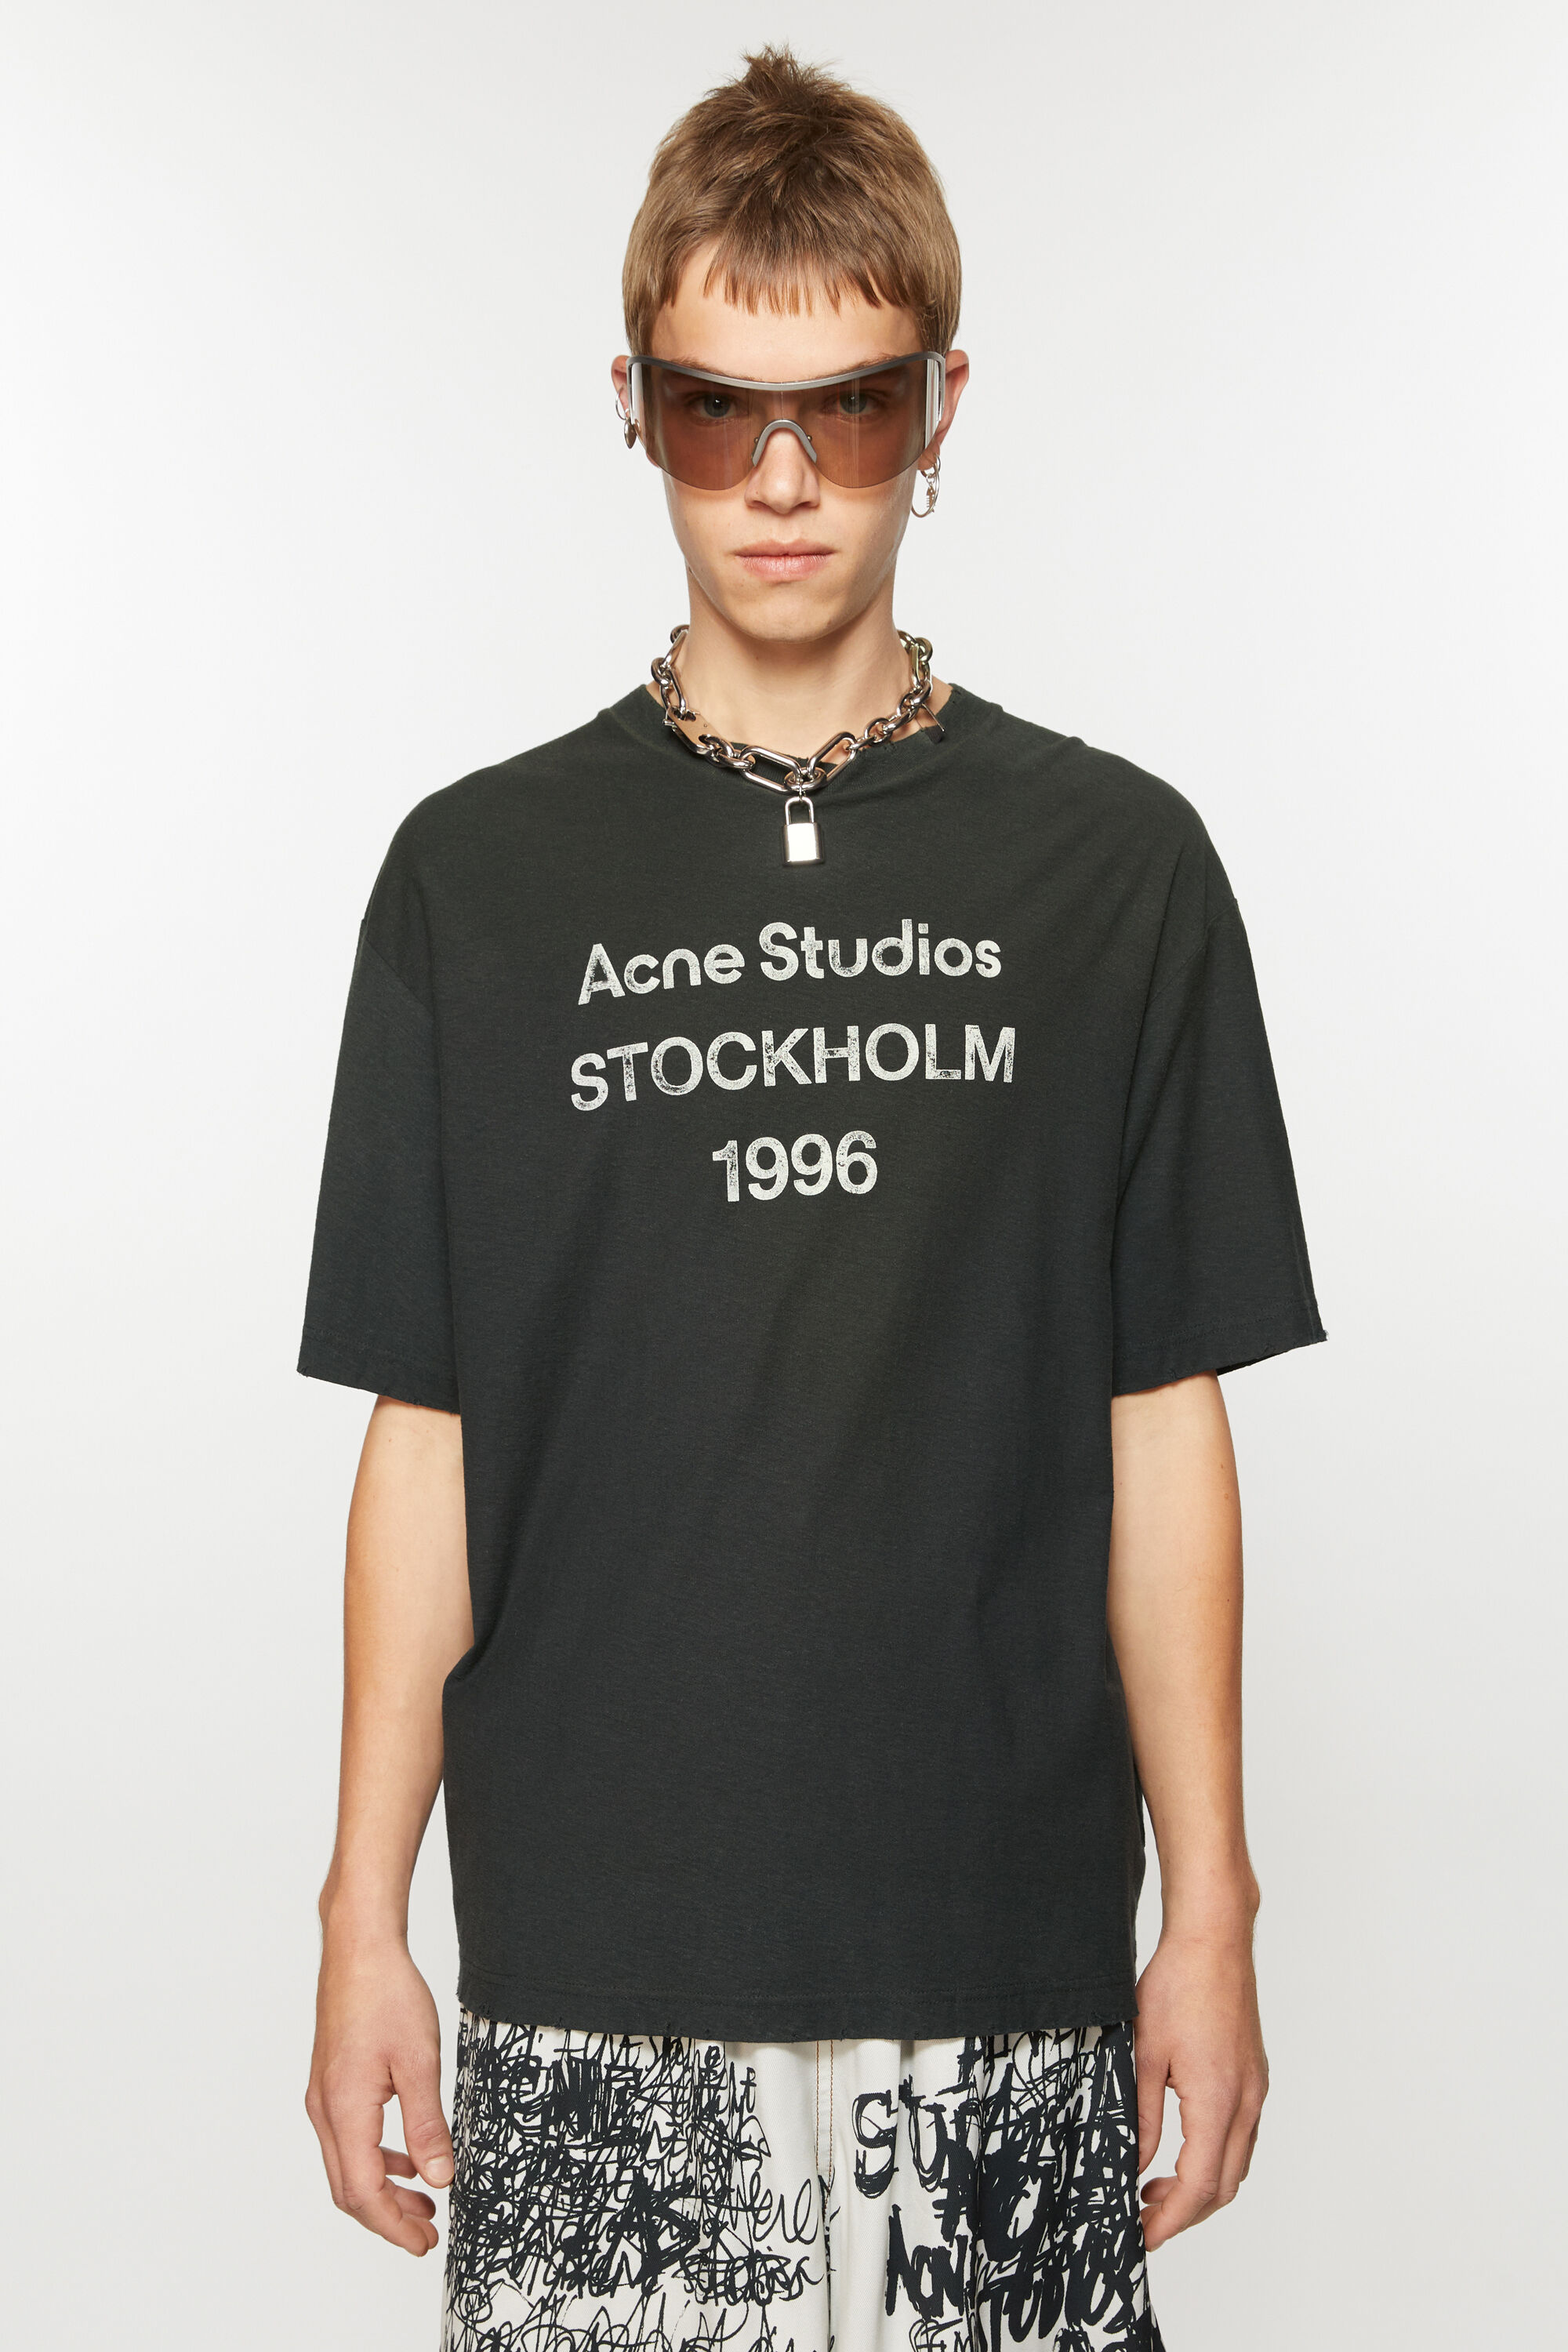 acne studios フェイデッド ブラック Tシャツご検討よろしくお願いいたします